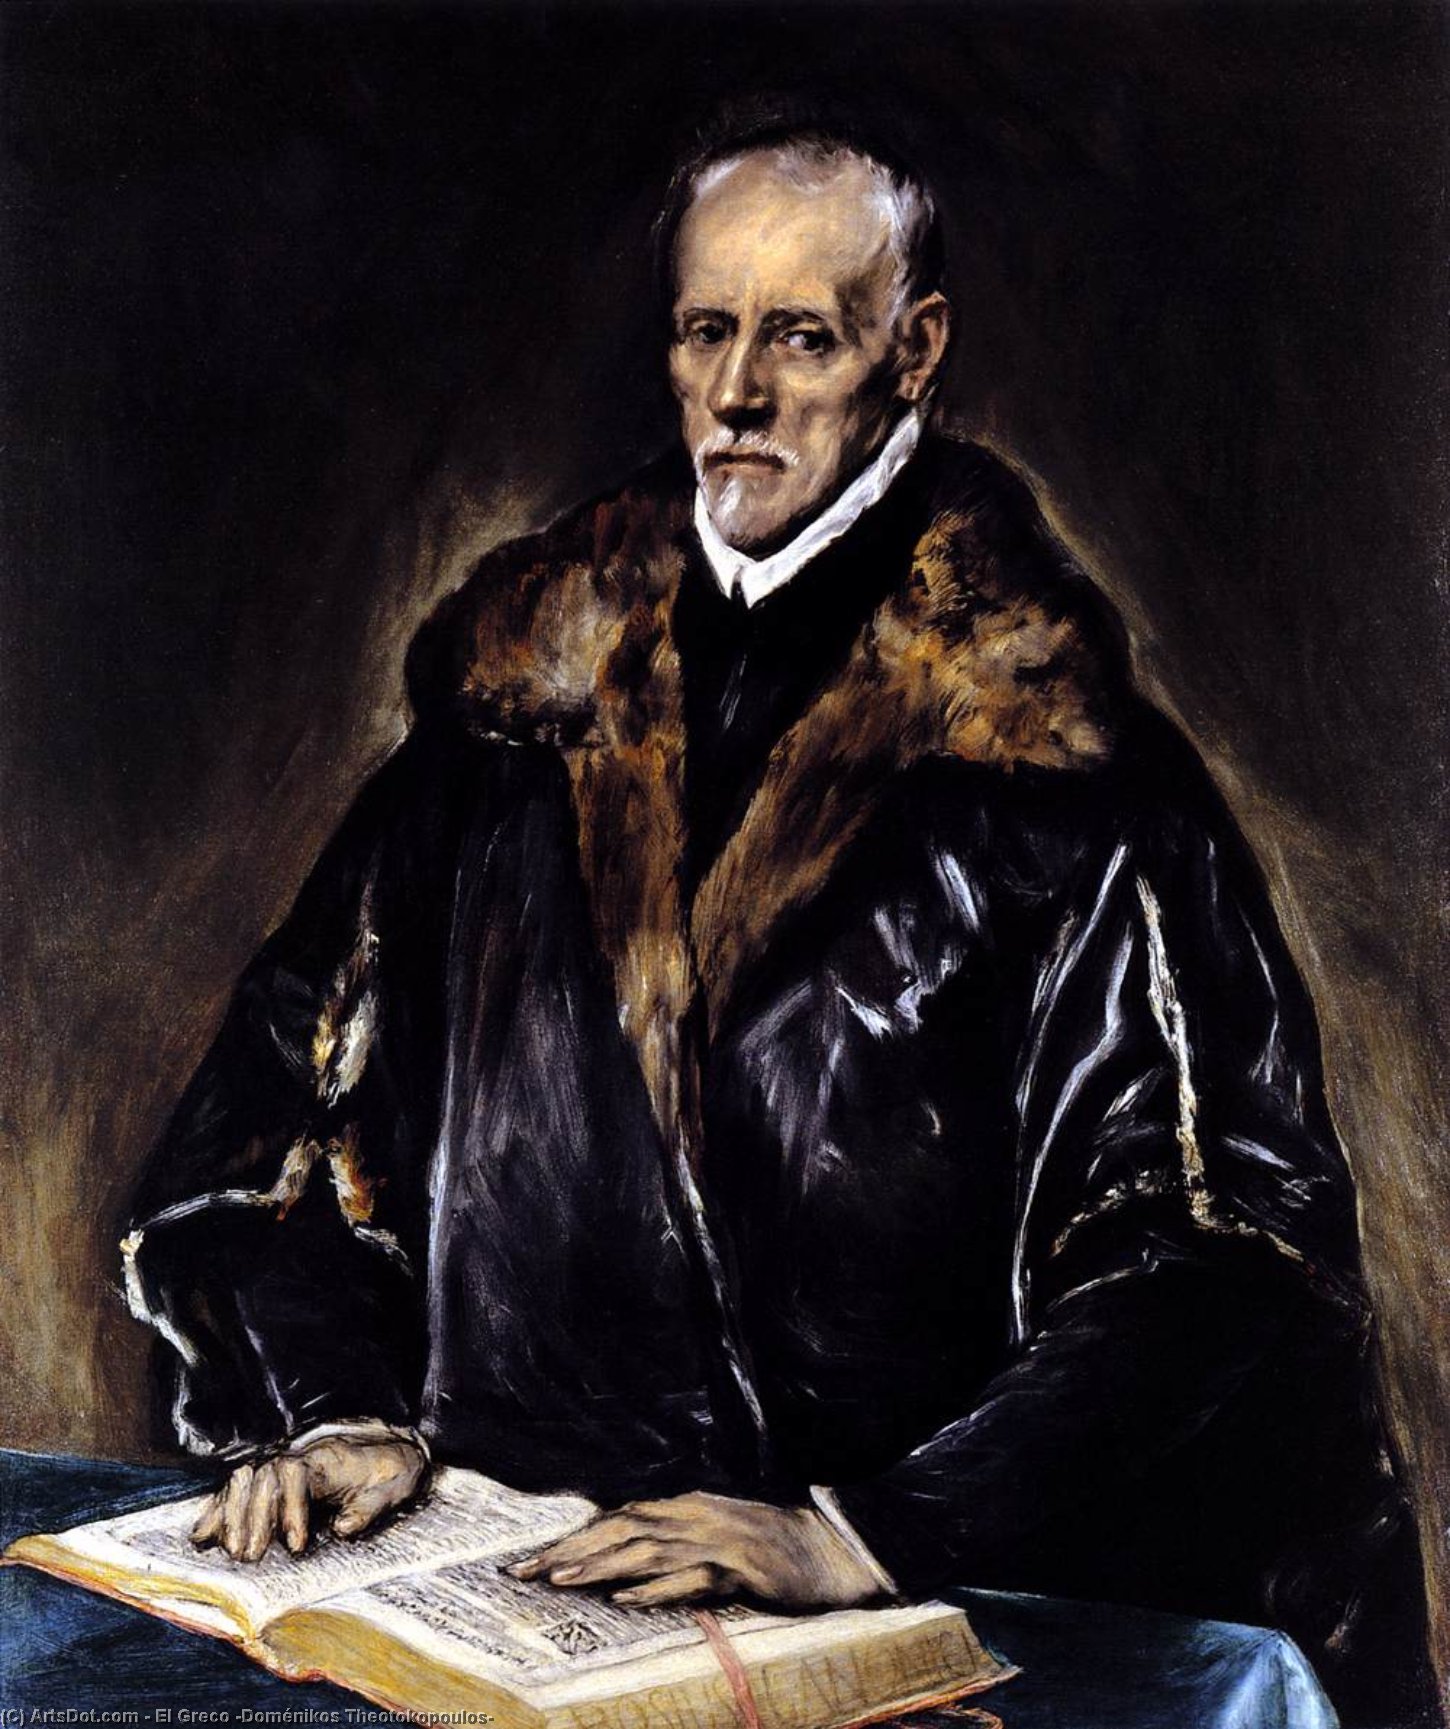 WikiOO.org - Encyclopedia of Fine Arts - Malba, Artwork El Greco (Doménikos Theotokopoulos) - A Prelate